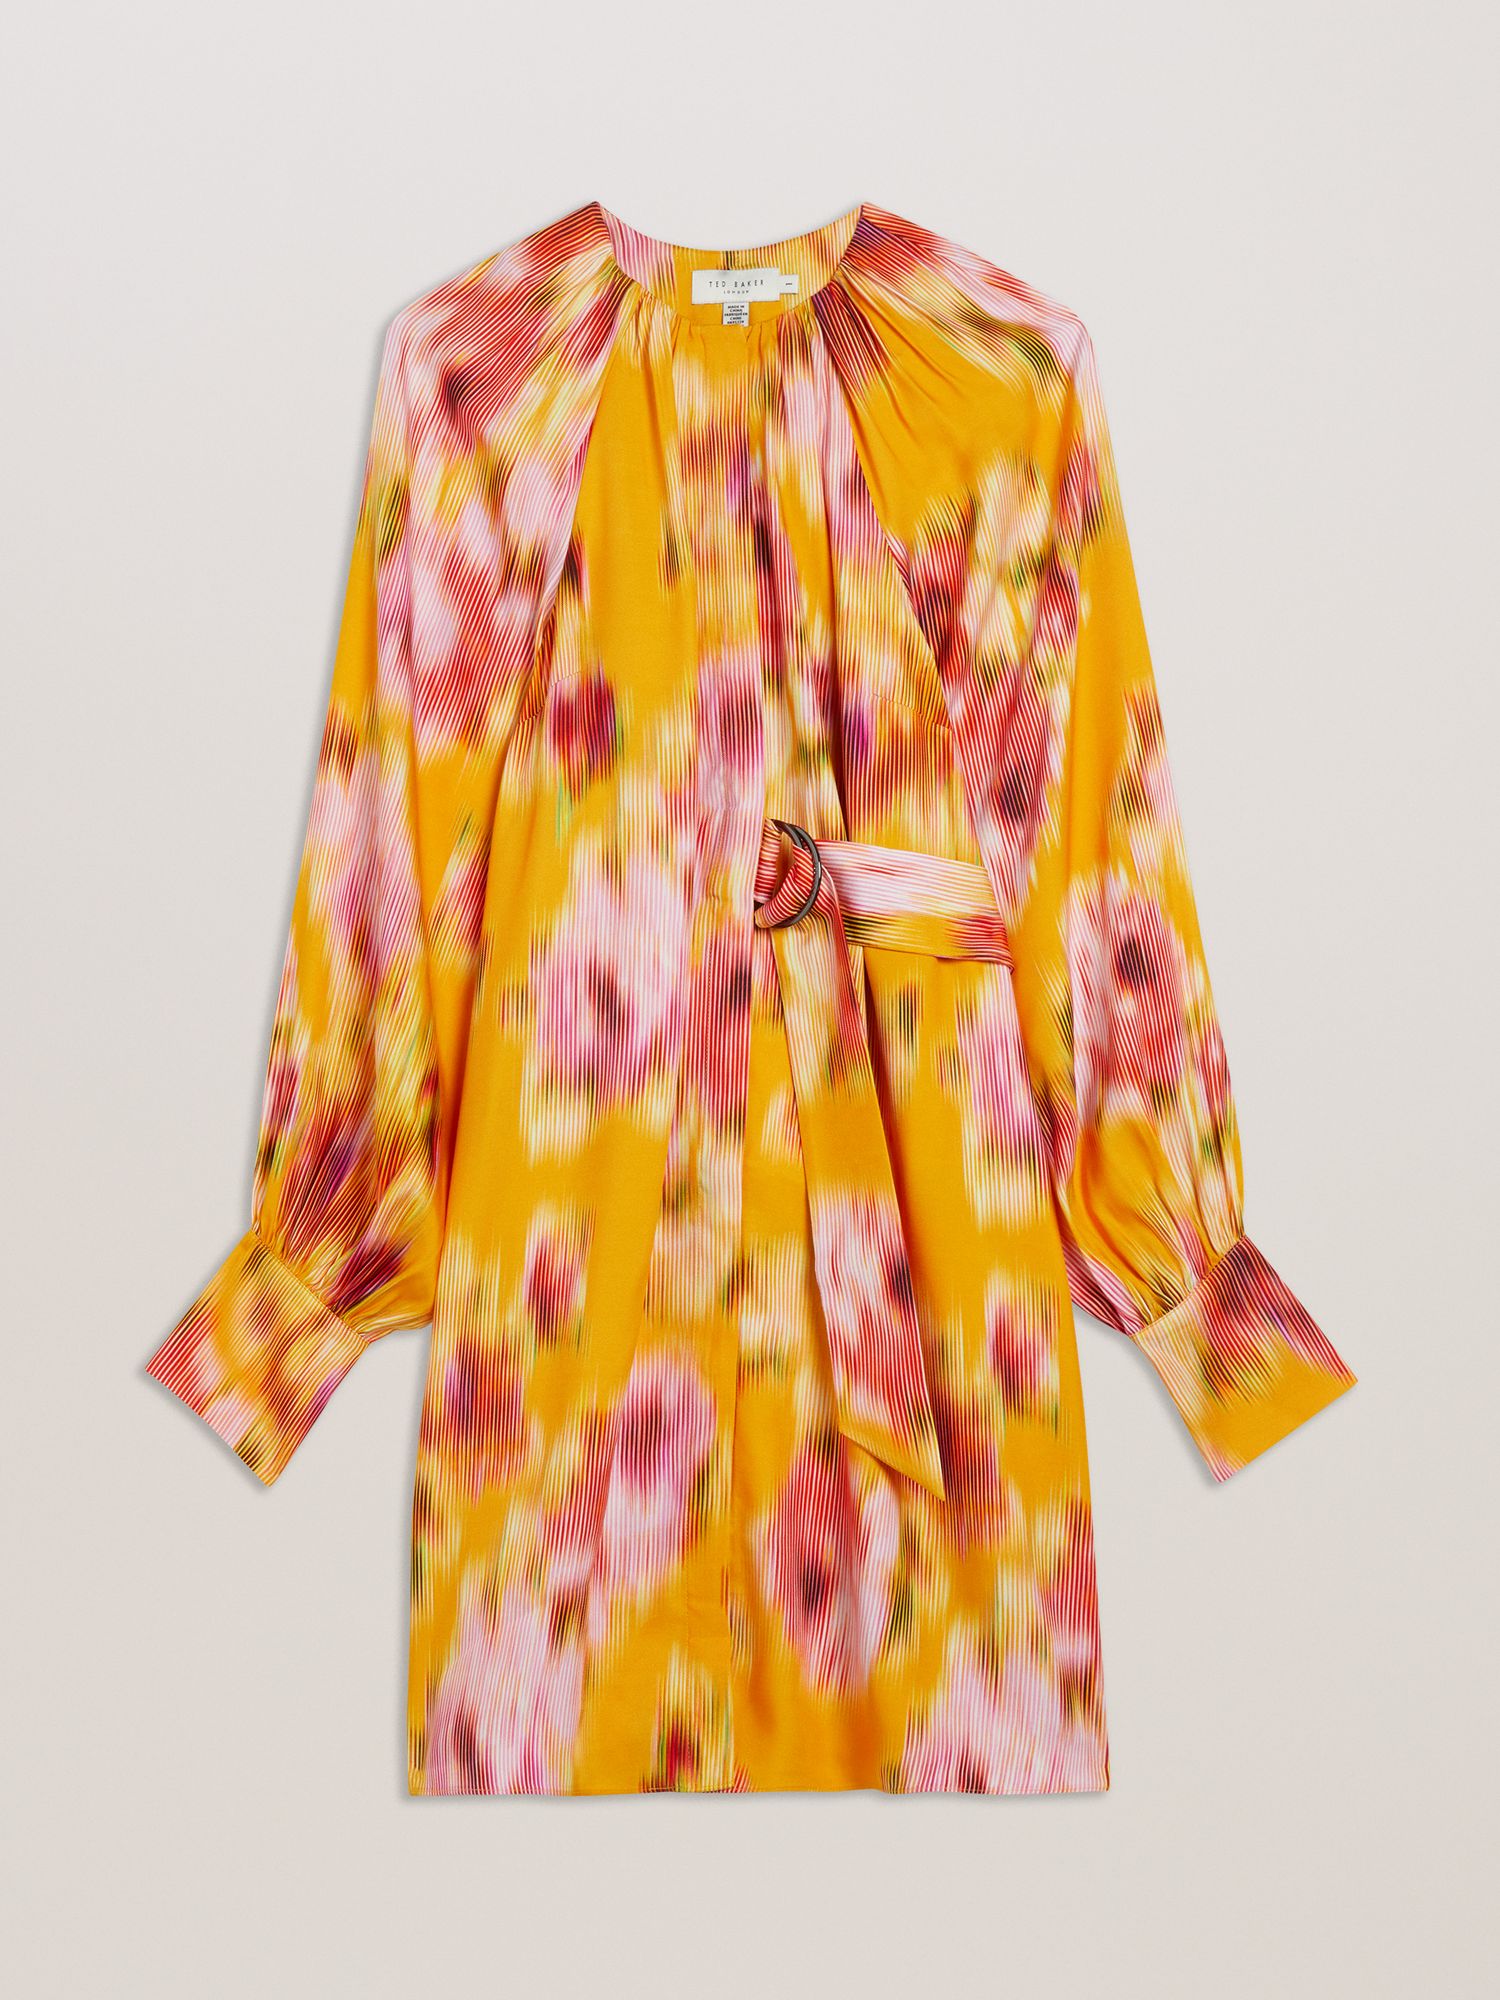 Ted Baker Akemi Graphic Print Mini Dress, Orange/Multi, 10